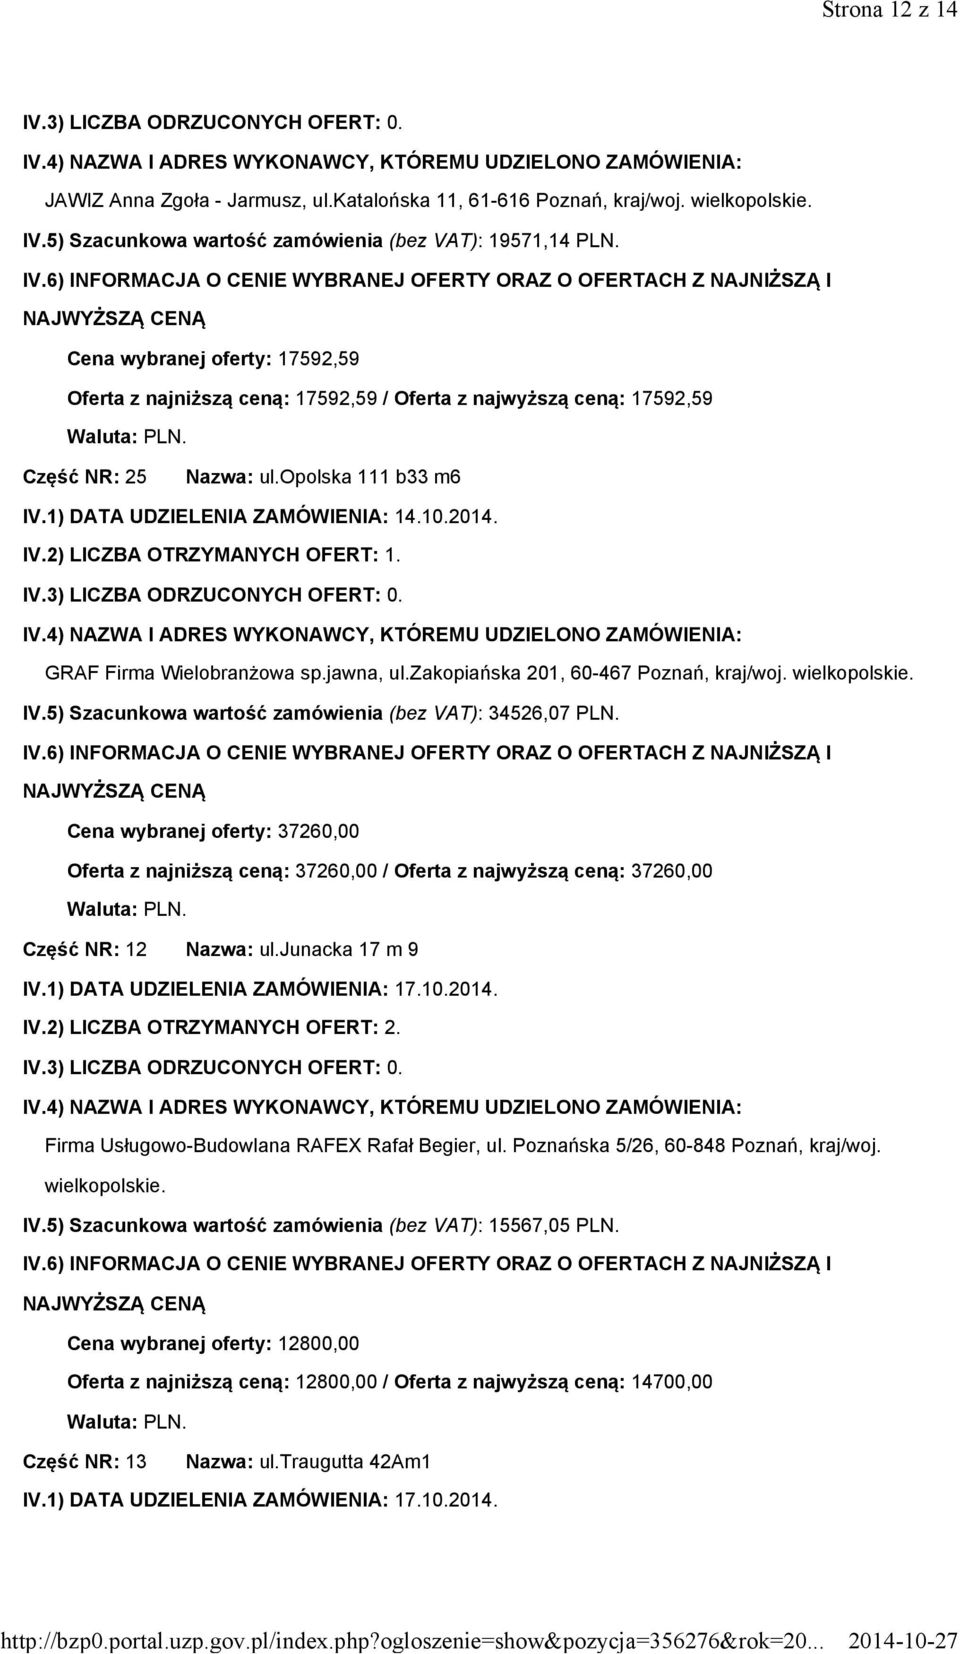 GRAF Firma Wielobranżowa sp.jawna, ul.zakopiańska 201, 60-467 Poznań, kraj/woj. IV.5) Szacunkowa wartość zamówienia (bez VAT): 34526,07 PLN.